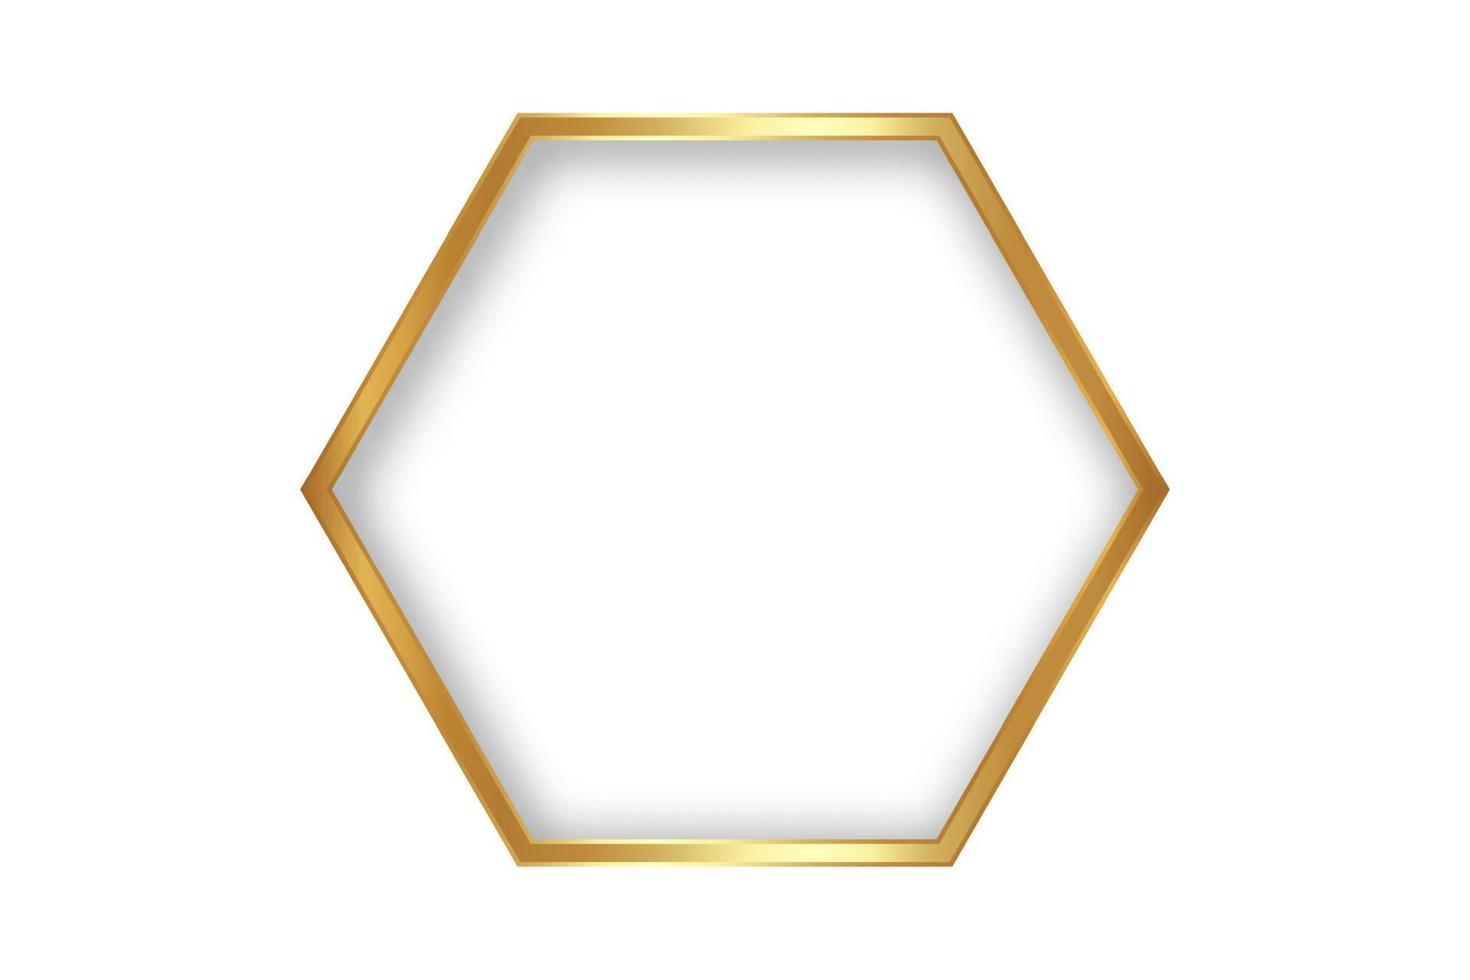 Marco de lujo hexagonal fino de estilo dorado sobre fondo blanco. diseño perfecto para encabezado, logotipo y banner de venta. borde geométrico de oro de ilustración vectorial aislado vector